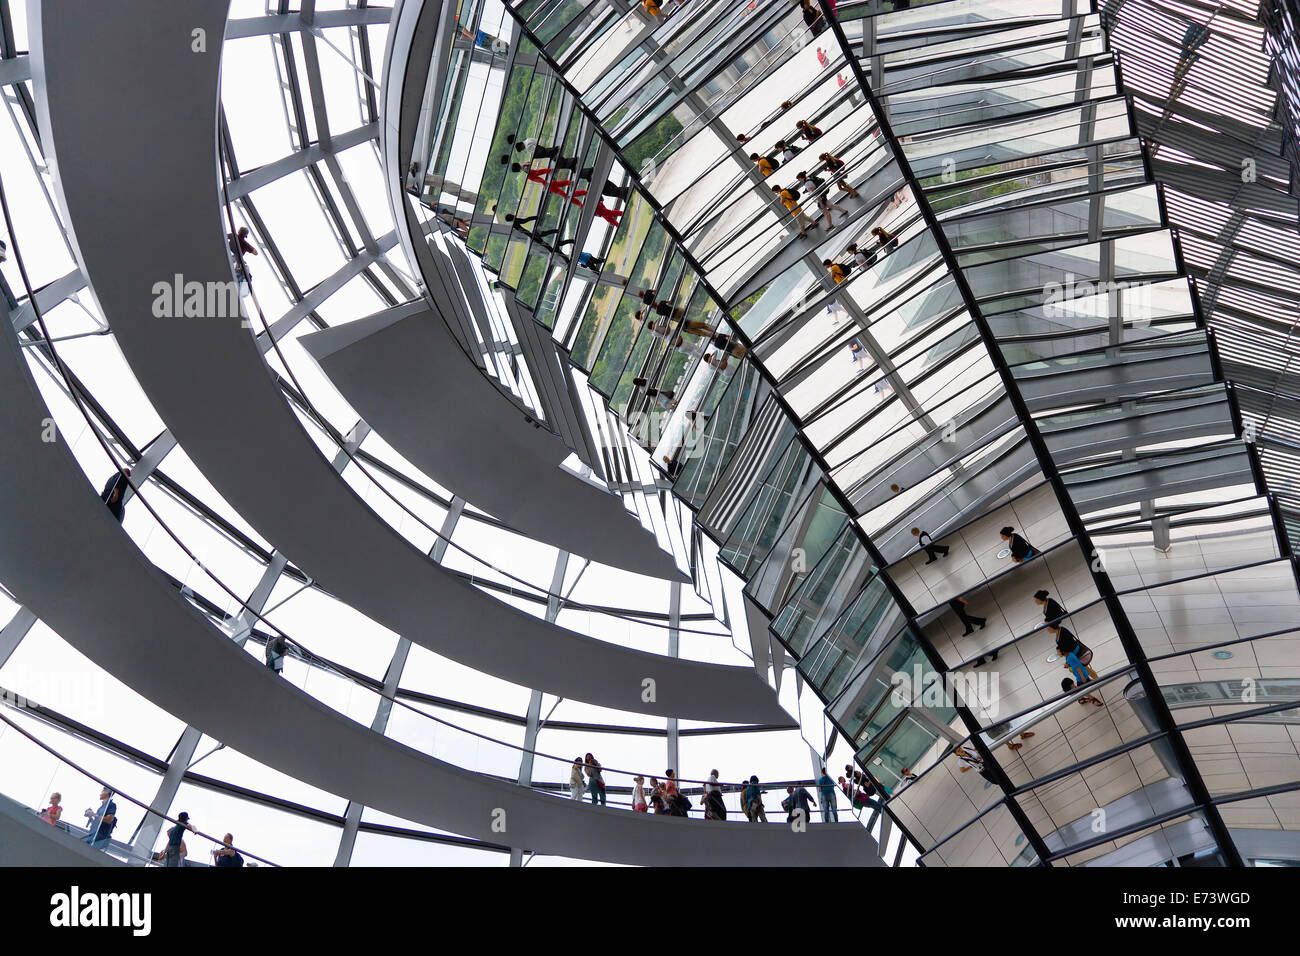 Germania, Berlino Mitte, interno della cupola di vetro con rampe e specchi sulla sommità del Reichstag progettata dall'architetto Norman Foster. Foto Stock